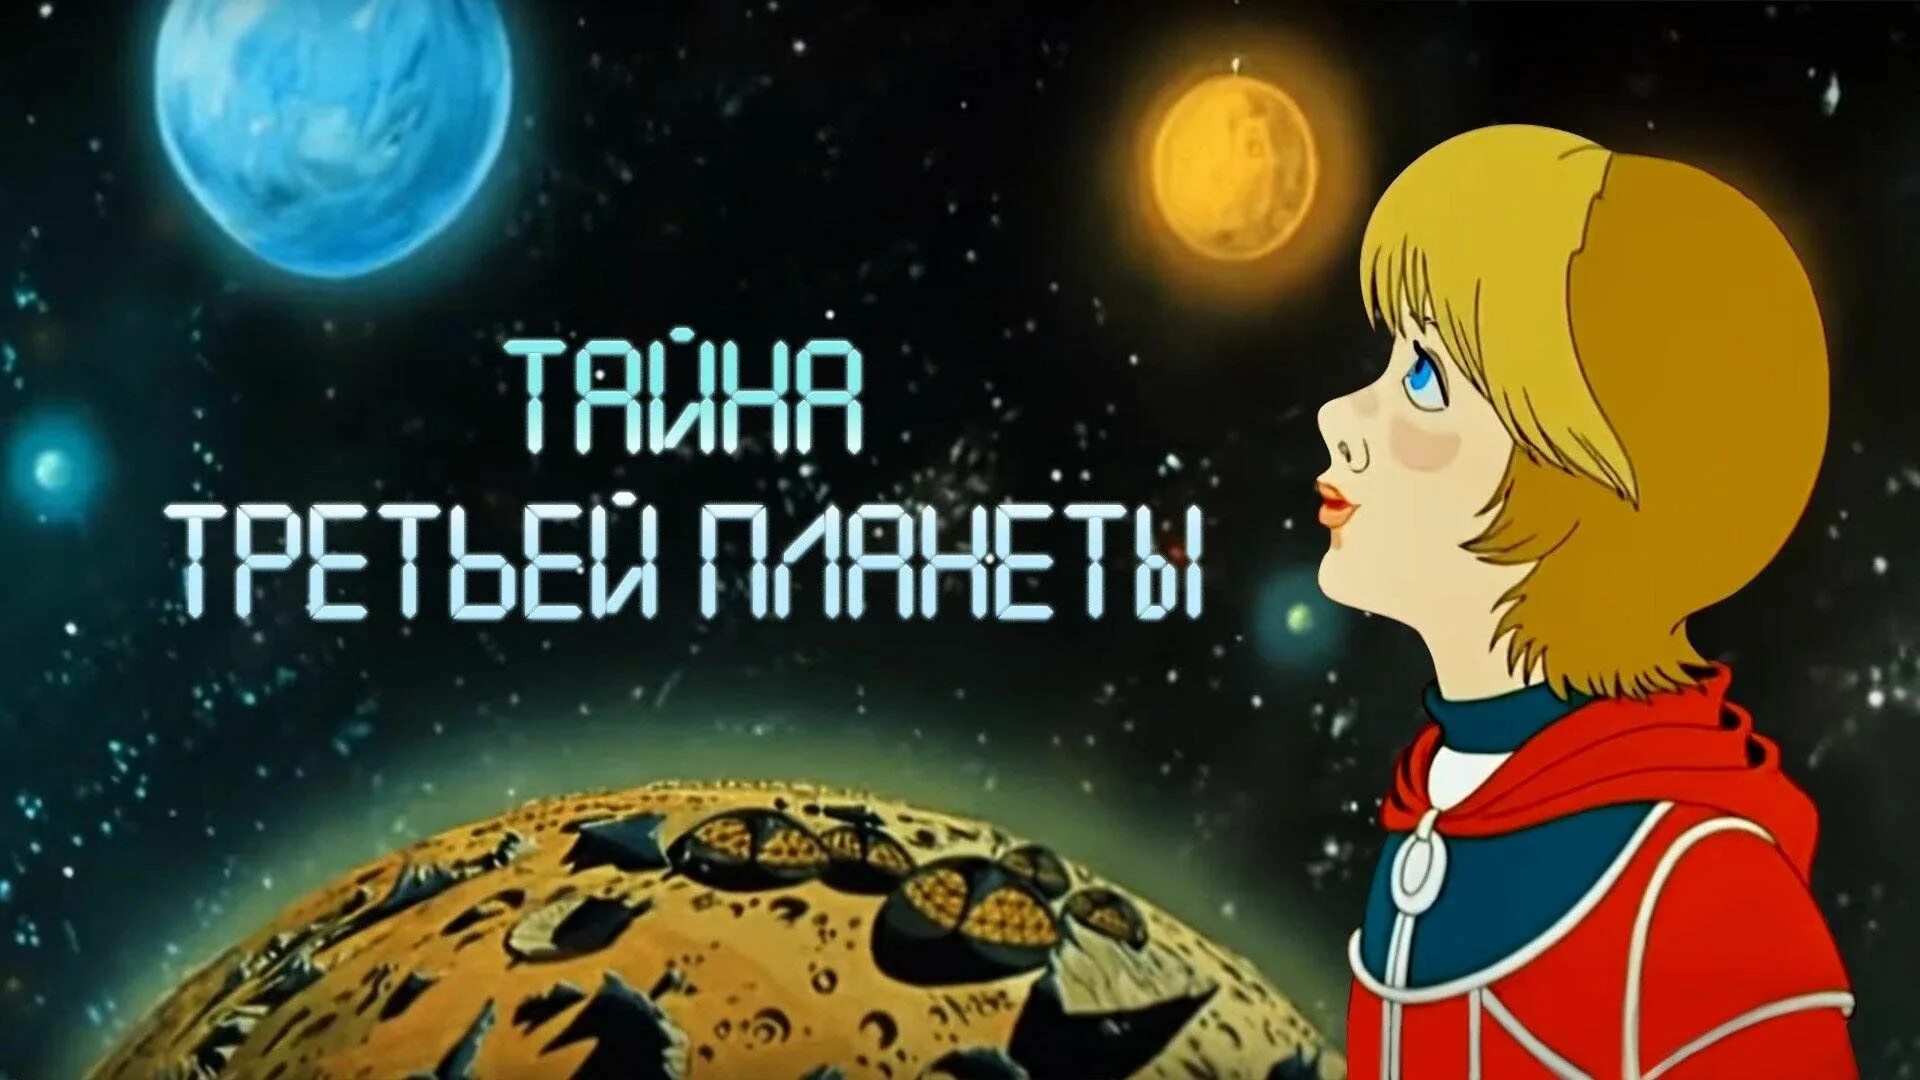 Тайна третьей планеты 1981 Алиса. Тайна третьей планеты аудиосказка слушать